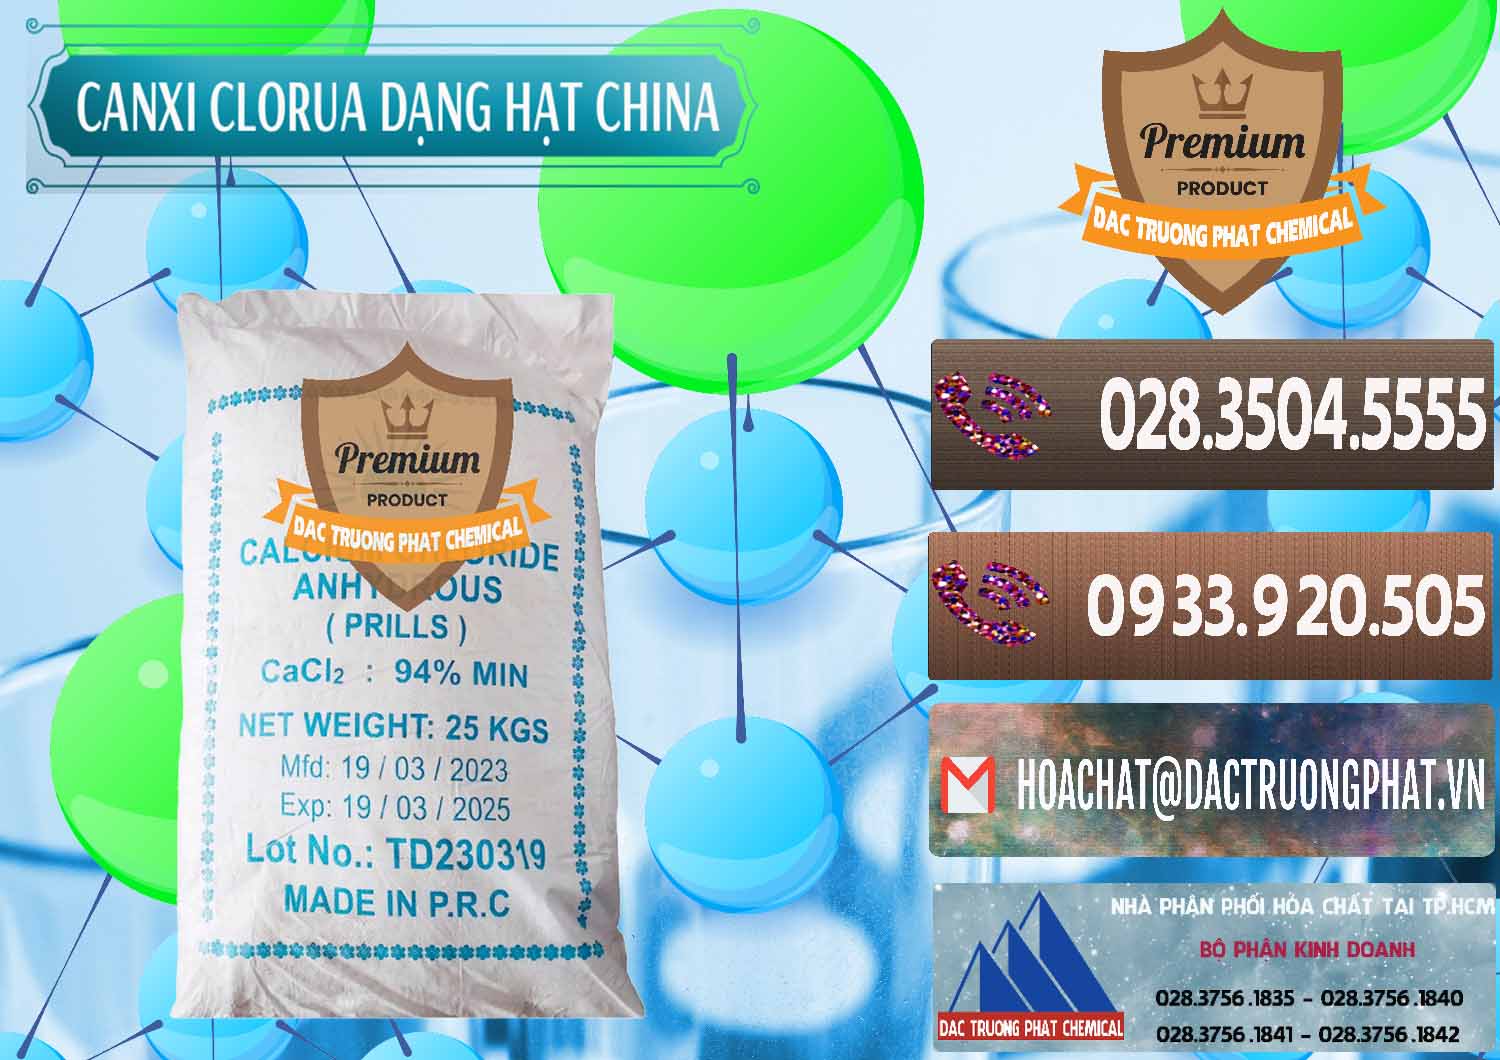 Công ty phân phối & bán CaCl2 – Canxi Clorua 94% Dạng Hạt Trung Quốc China - 0373 - Nơi phân phối và cung cấp hóa chất tại TP.HCM - hoachatviet.net